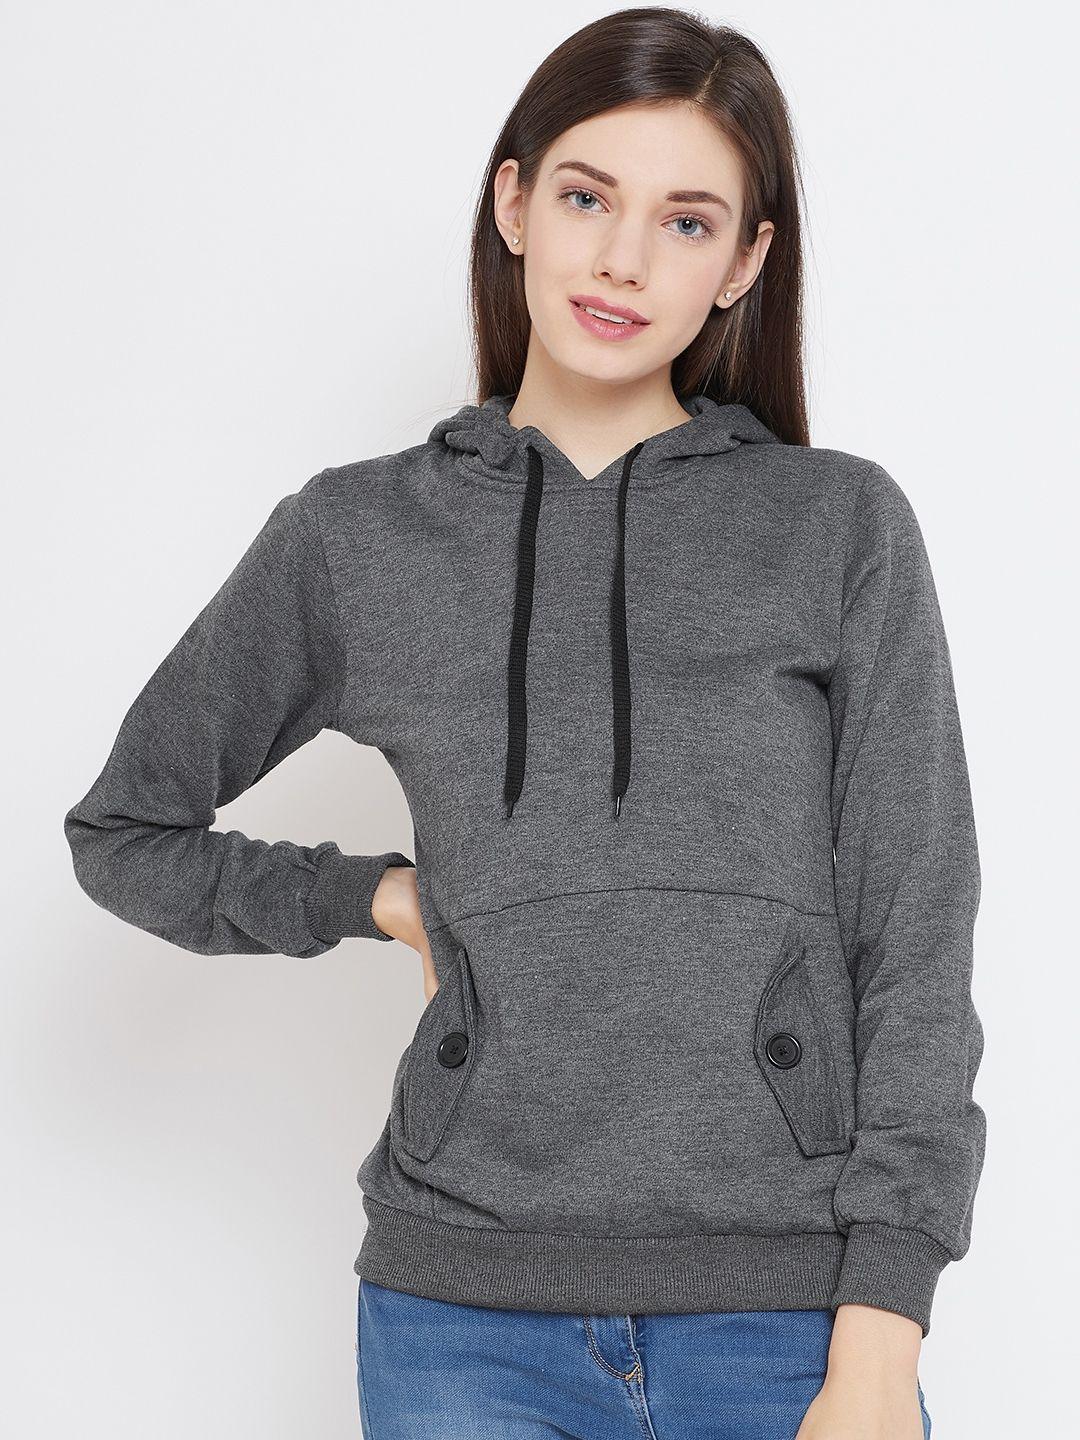 belle-fille-women-charcoal-grey-solid-hooded-sweatshirt